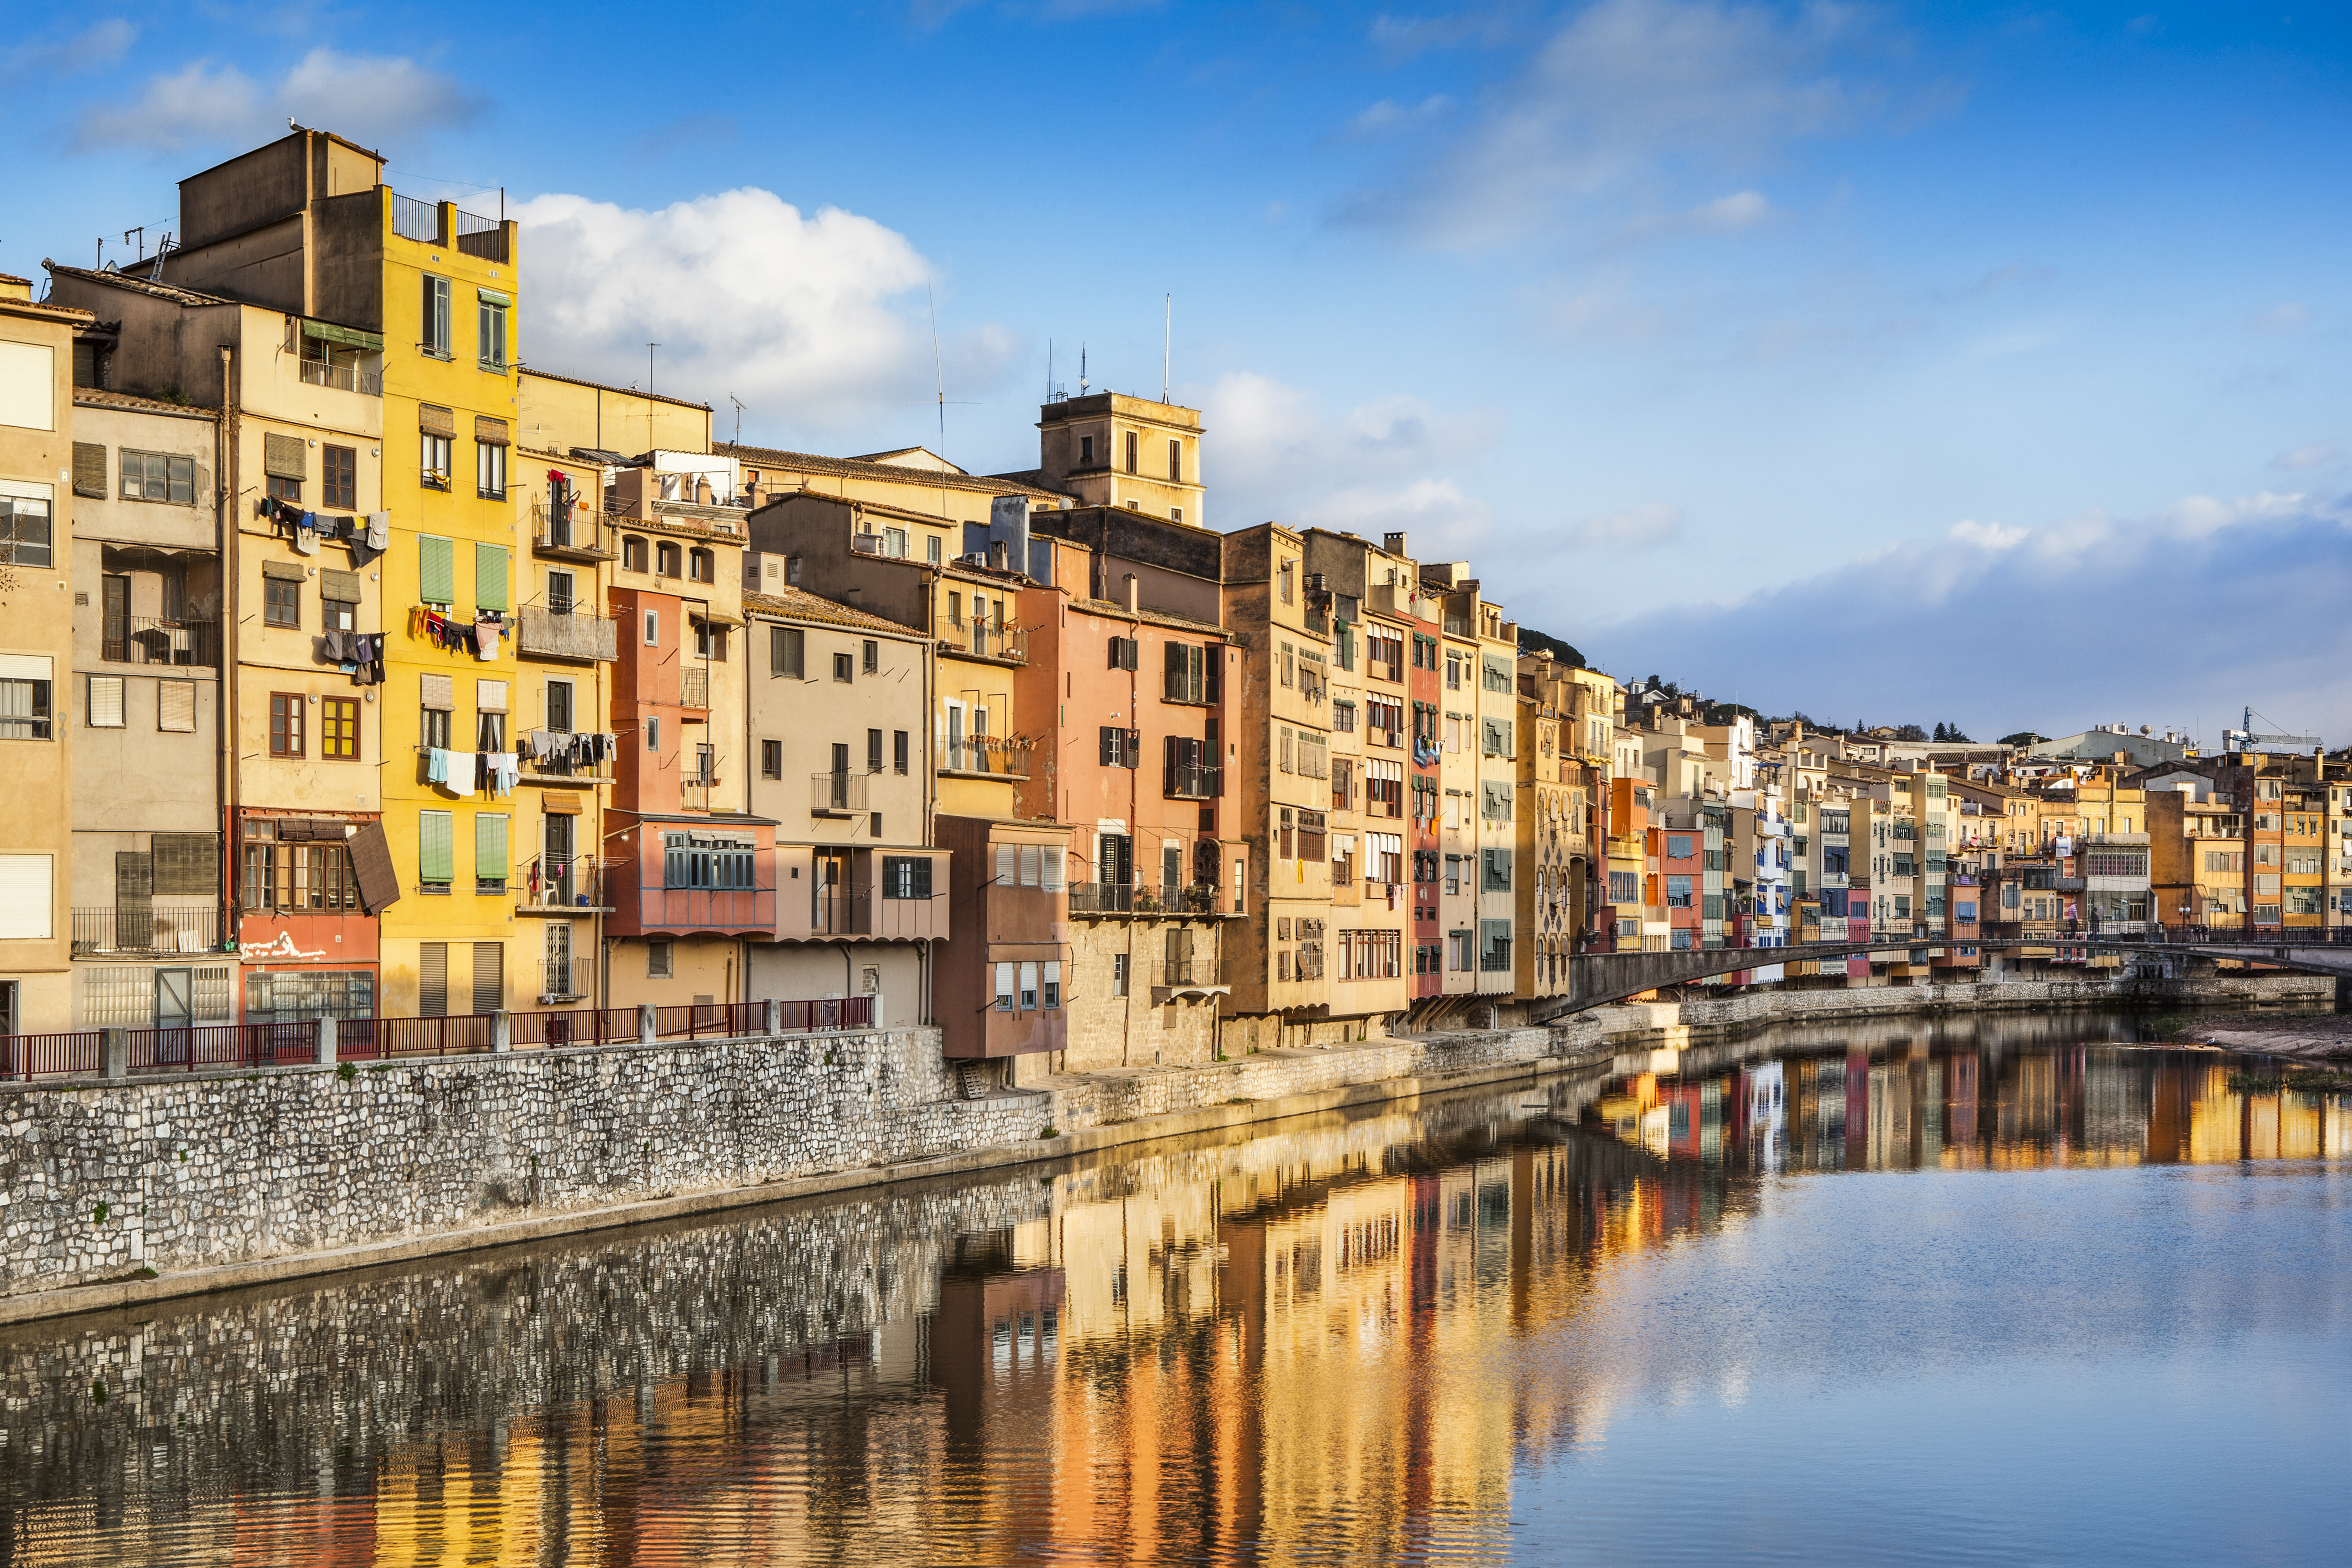 Turisme cultural i creatiu a Girona